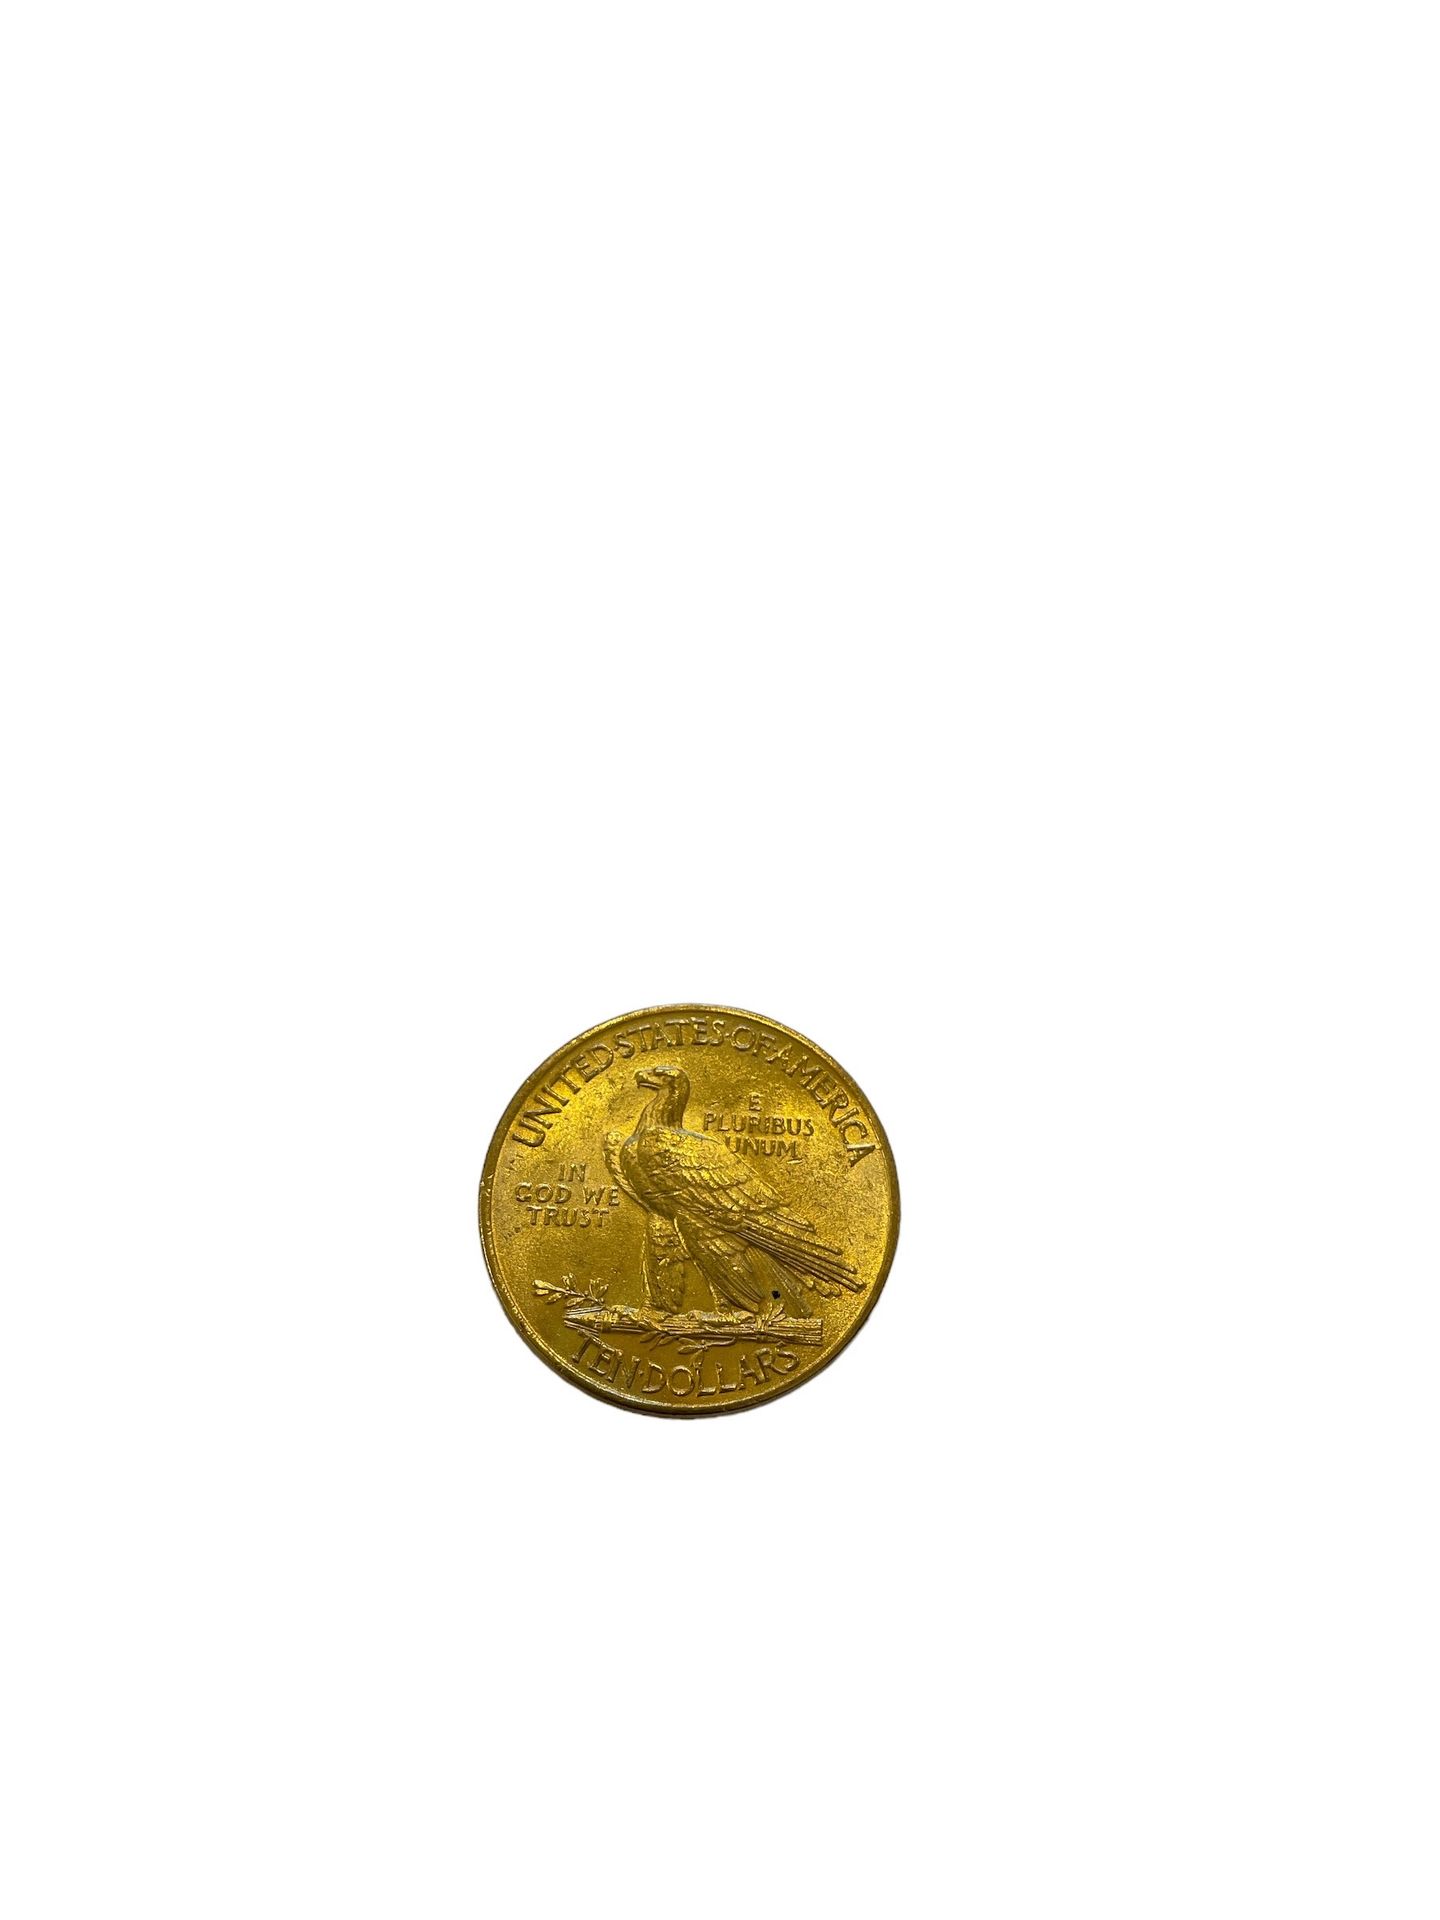 Null ESTADOS UNIDOS
10 dólares oro
Peso : 16,7 g